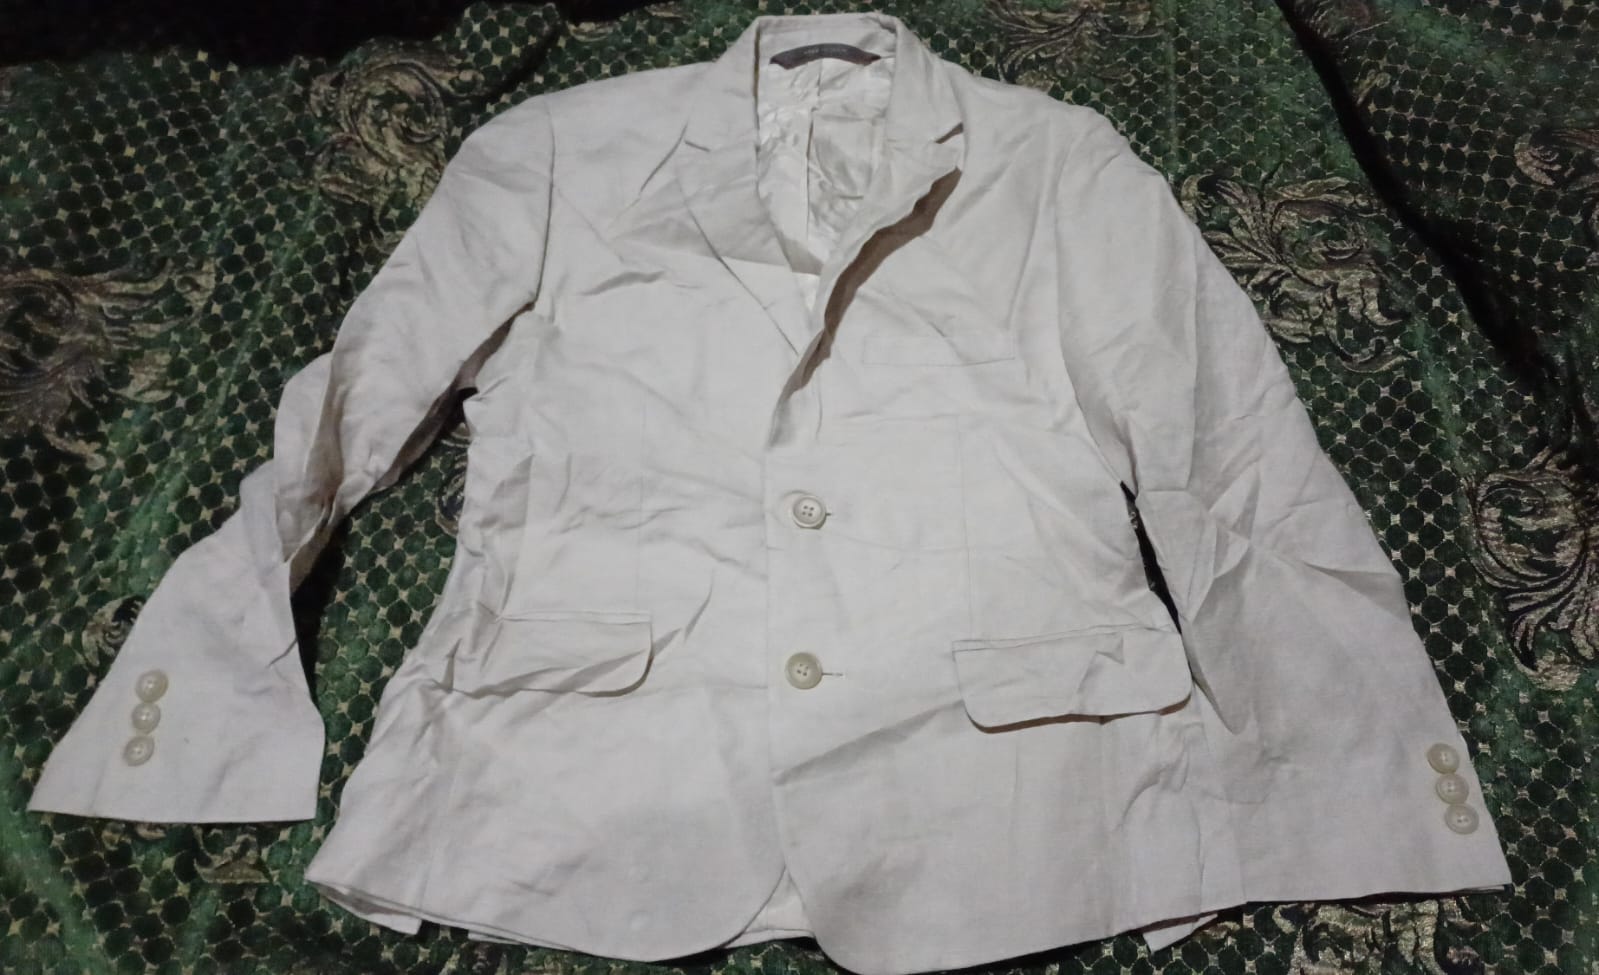 Venta de chaquetas de buena Calidad en Santo Domingo DN Foto 7206407-5.jpg